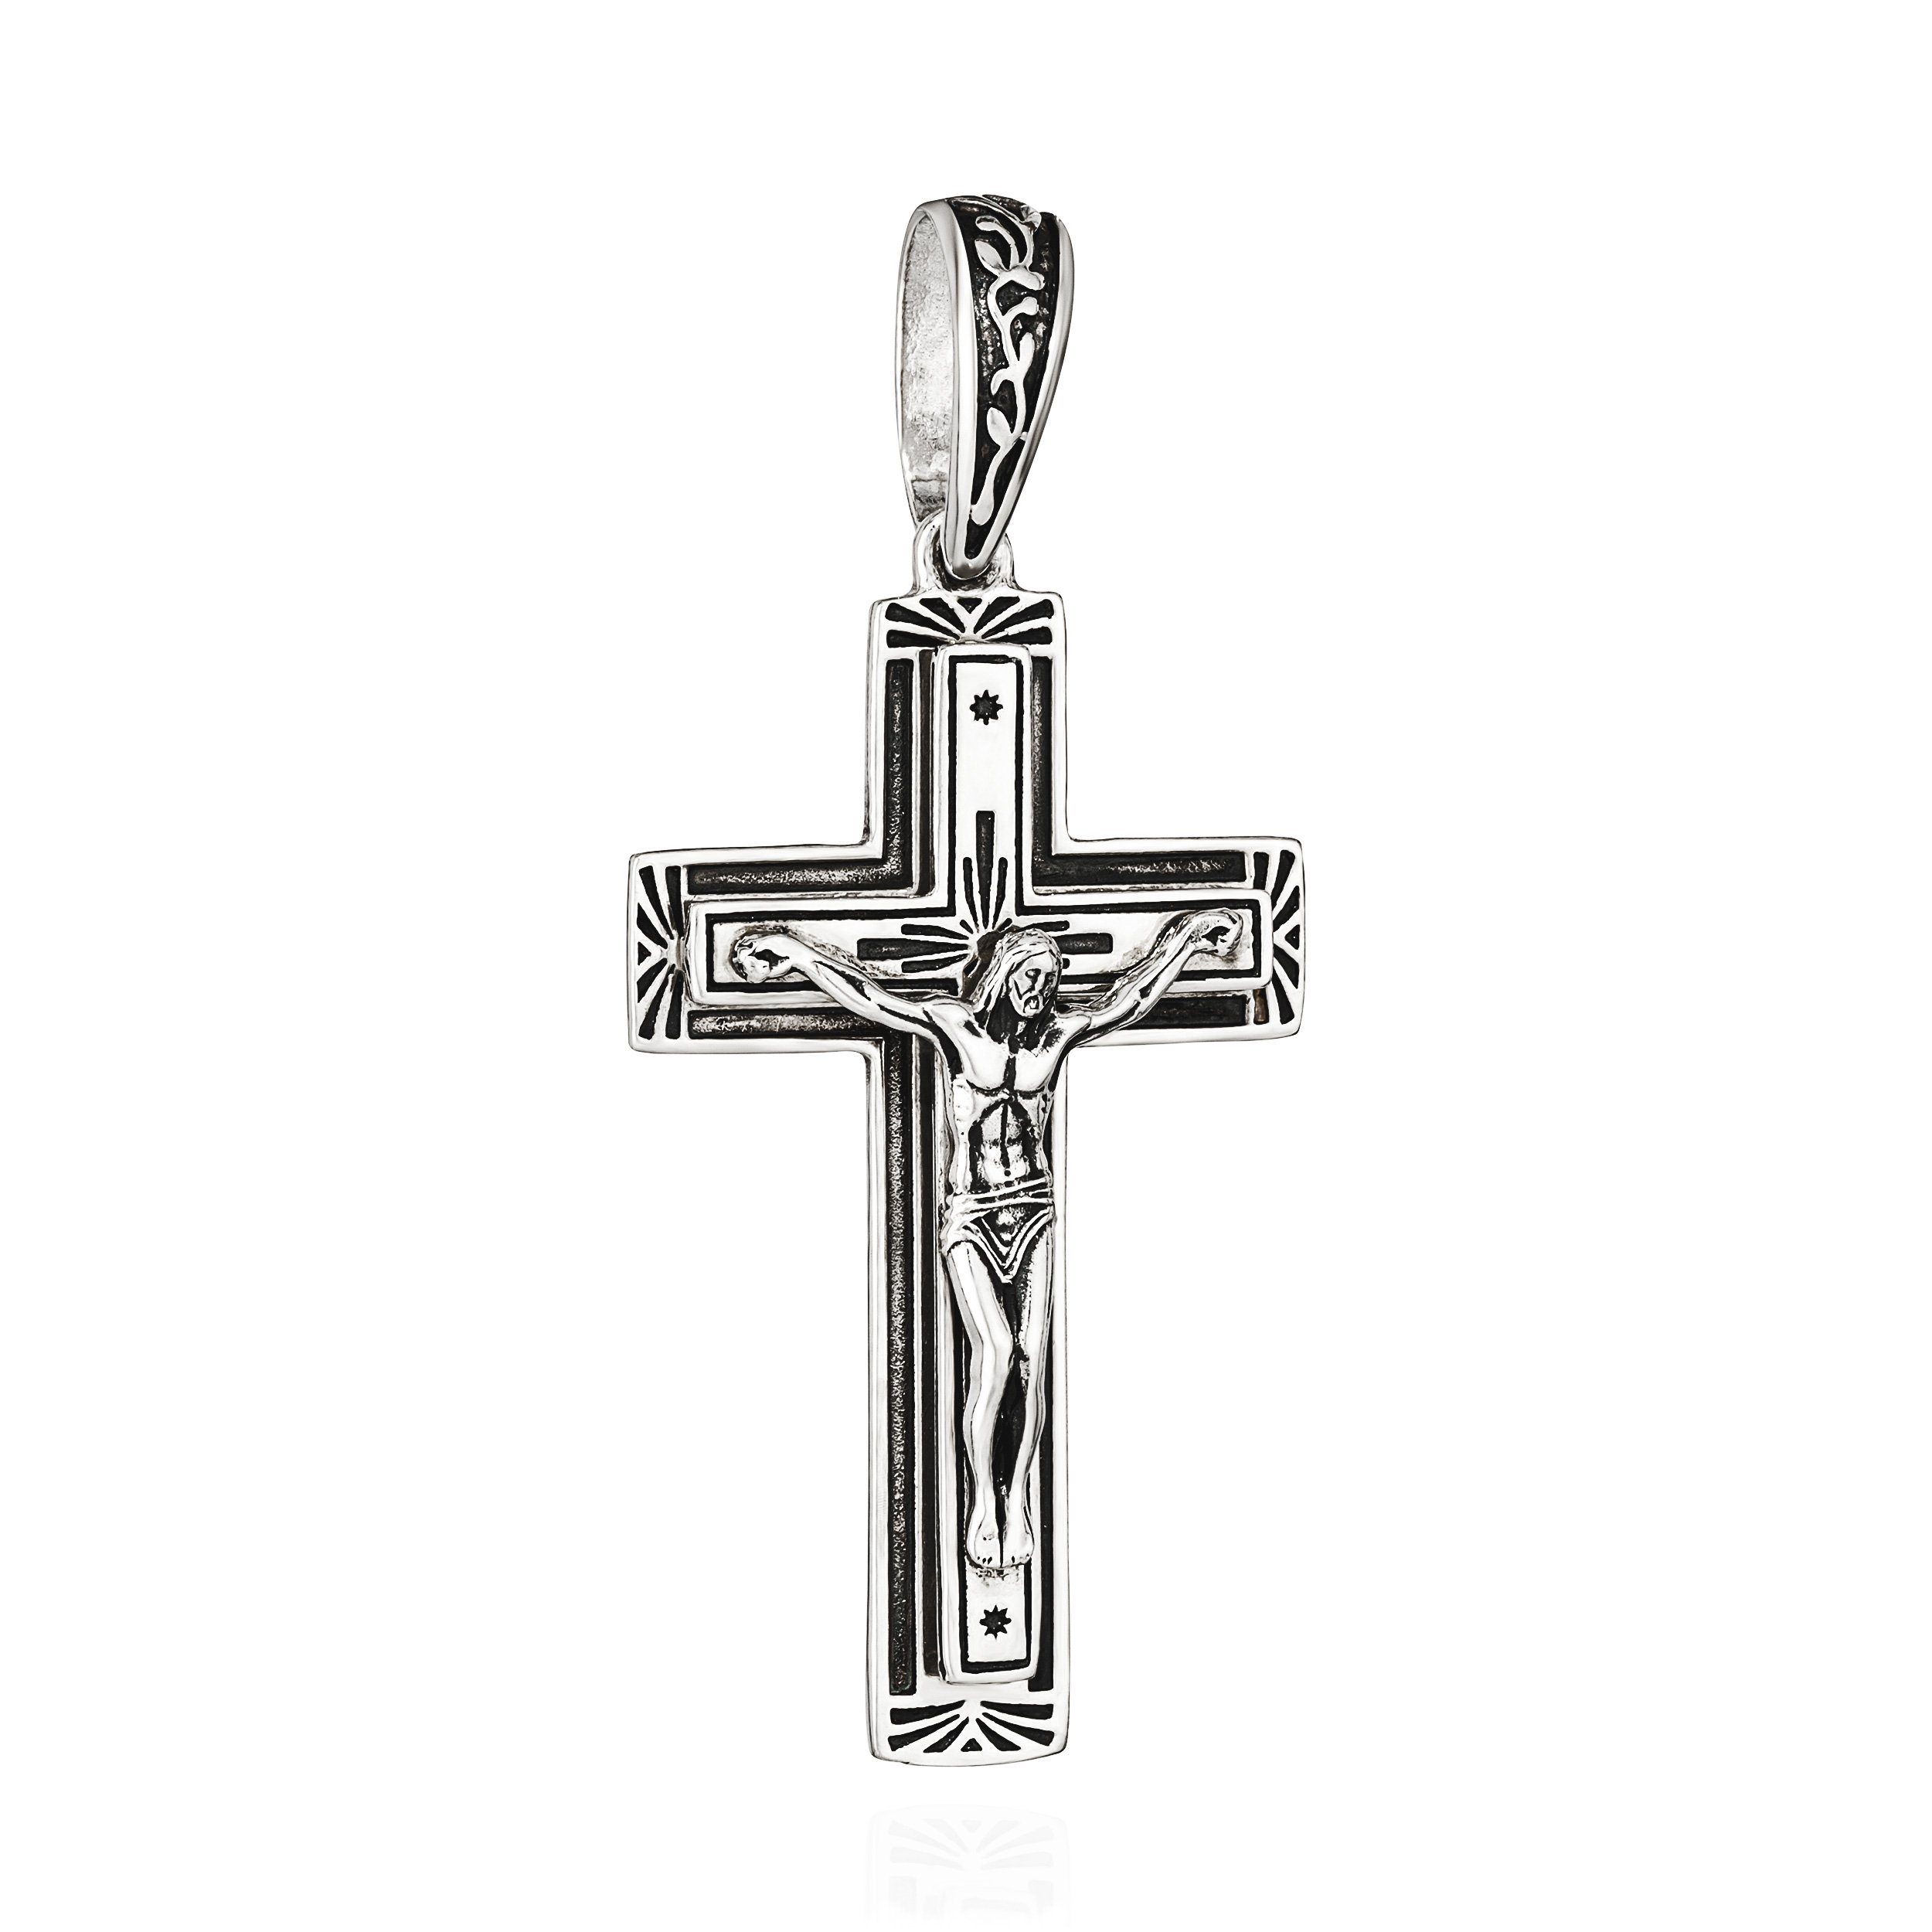 NKlaus Kettenanhänger Kreuzanhänger 925 Silber 40mm x 24mm Kruzifix Jesus Christus Motiv